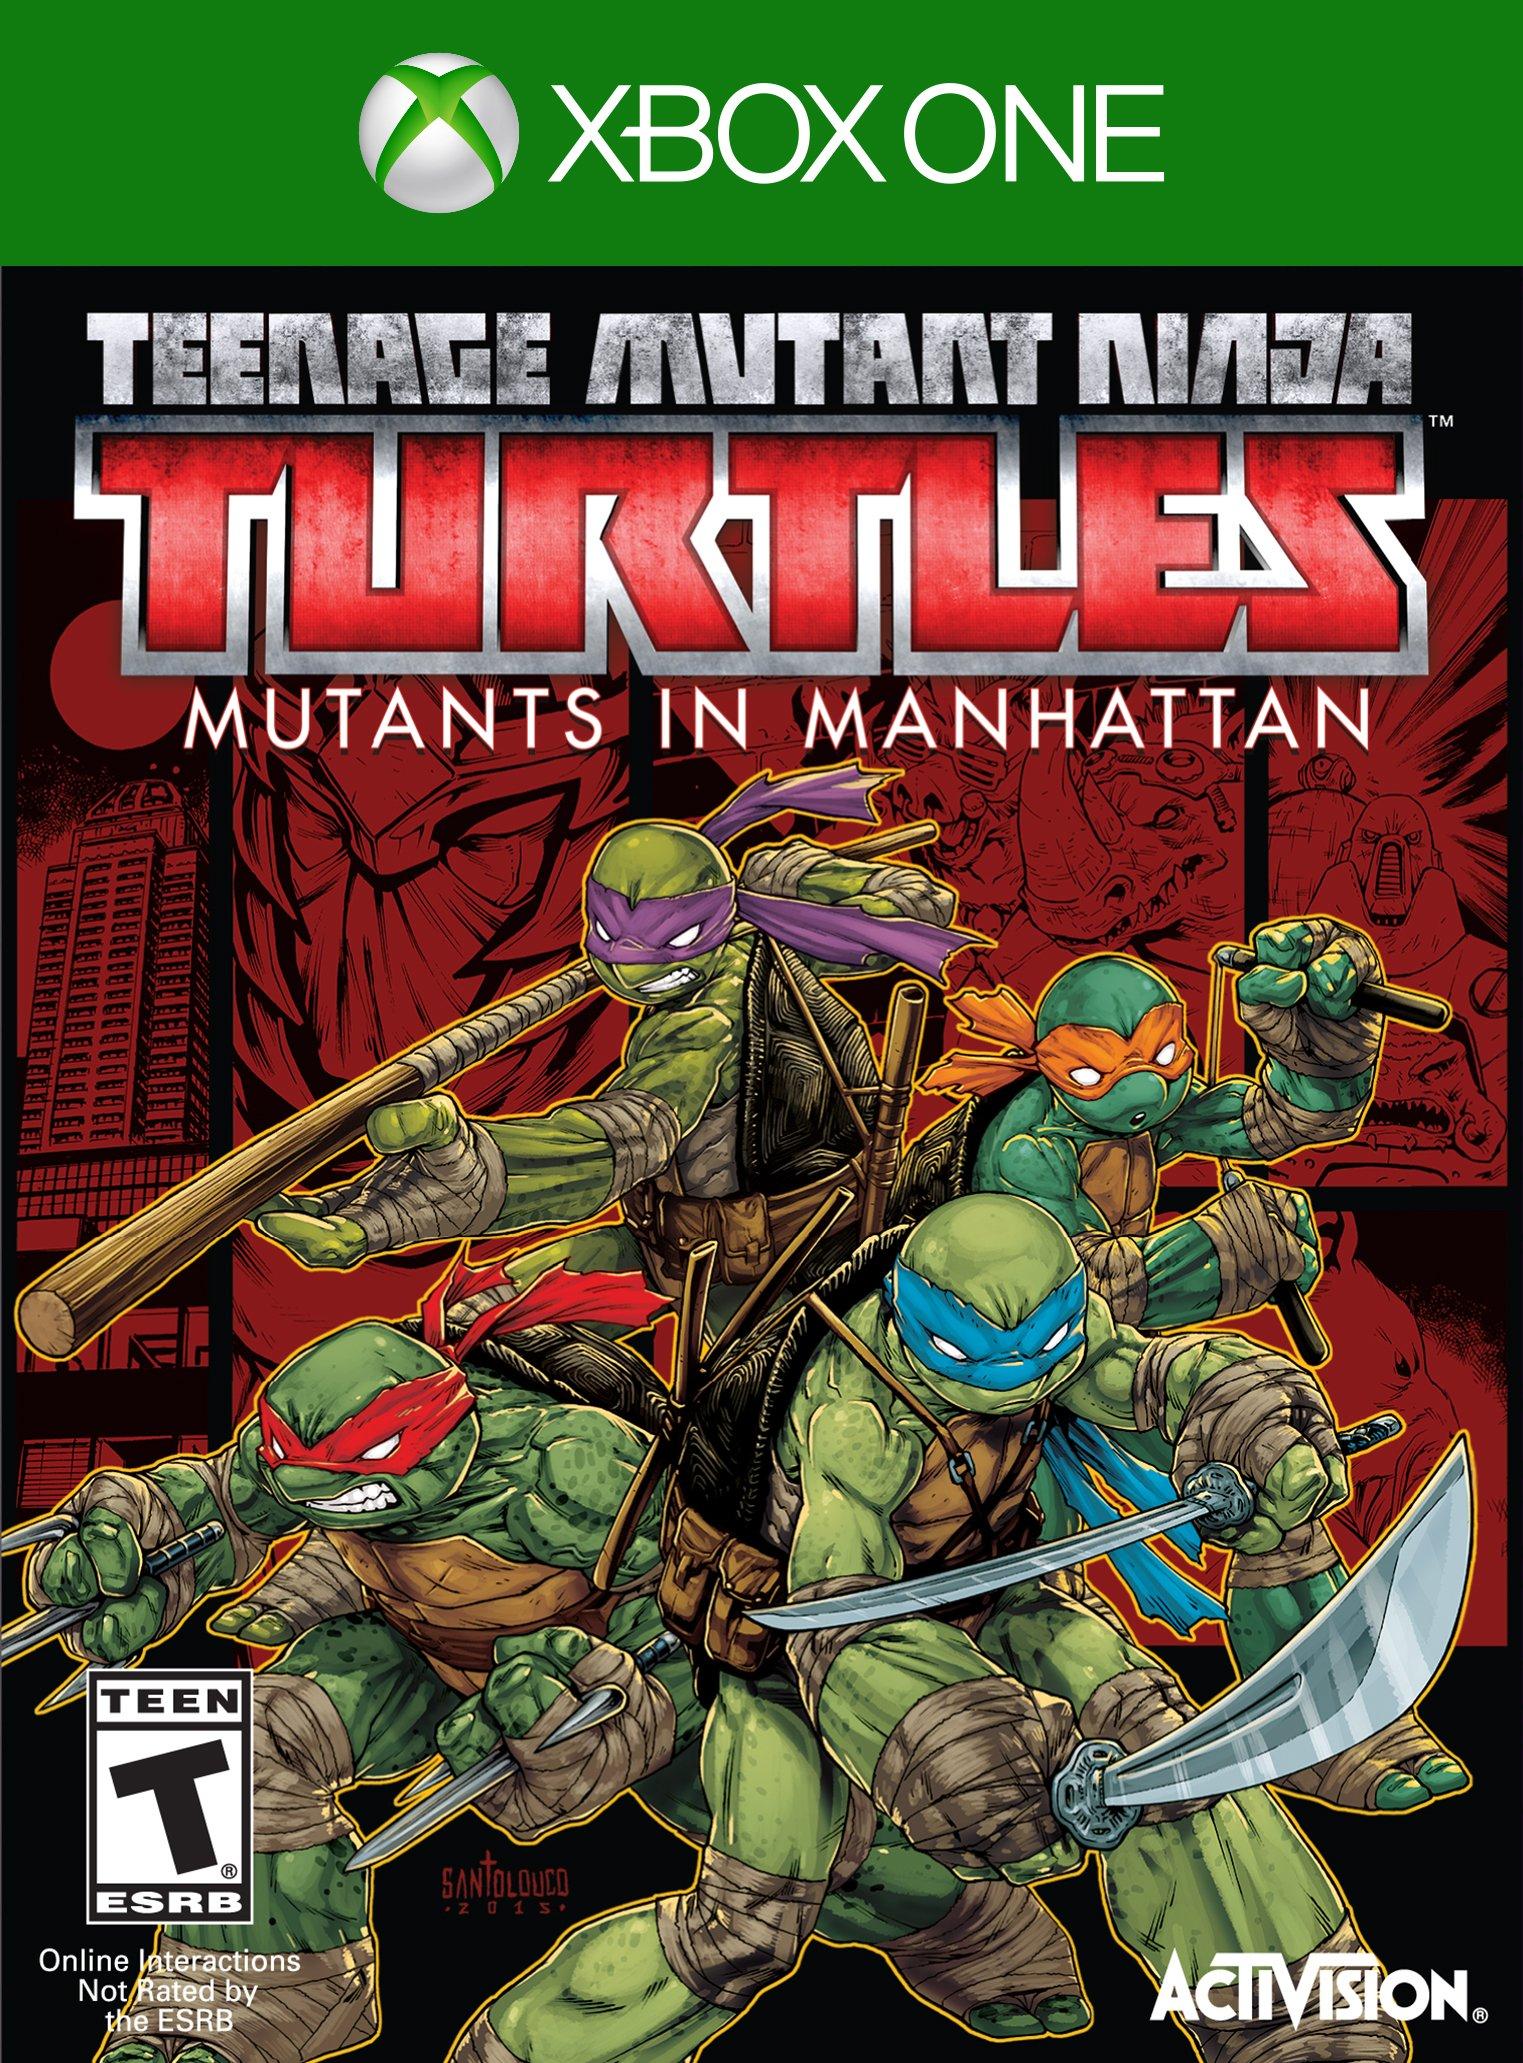 Teenage Mutant Ninja Turtles - Xbox 360 (SEMINOVO) - Interactive Gamestore